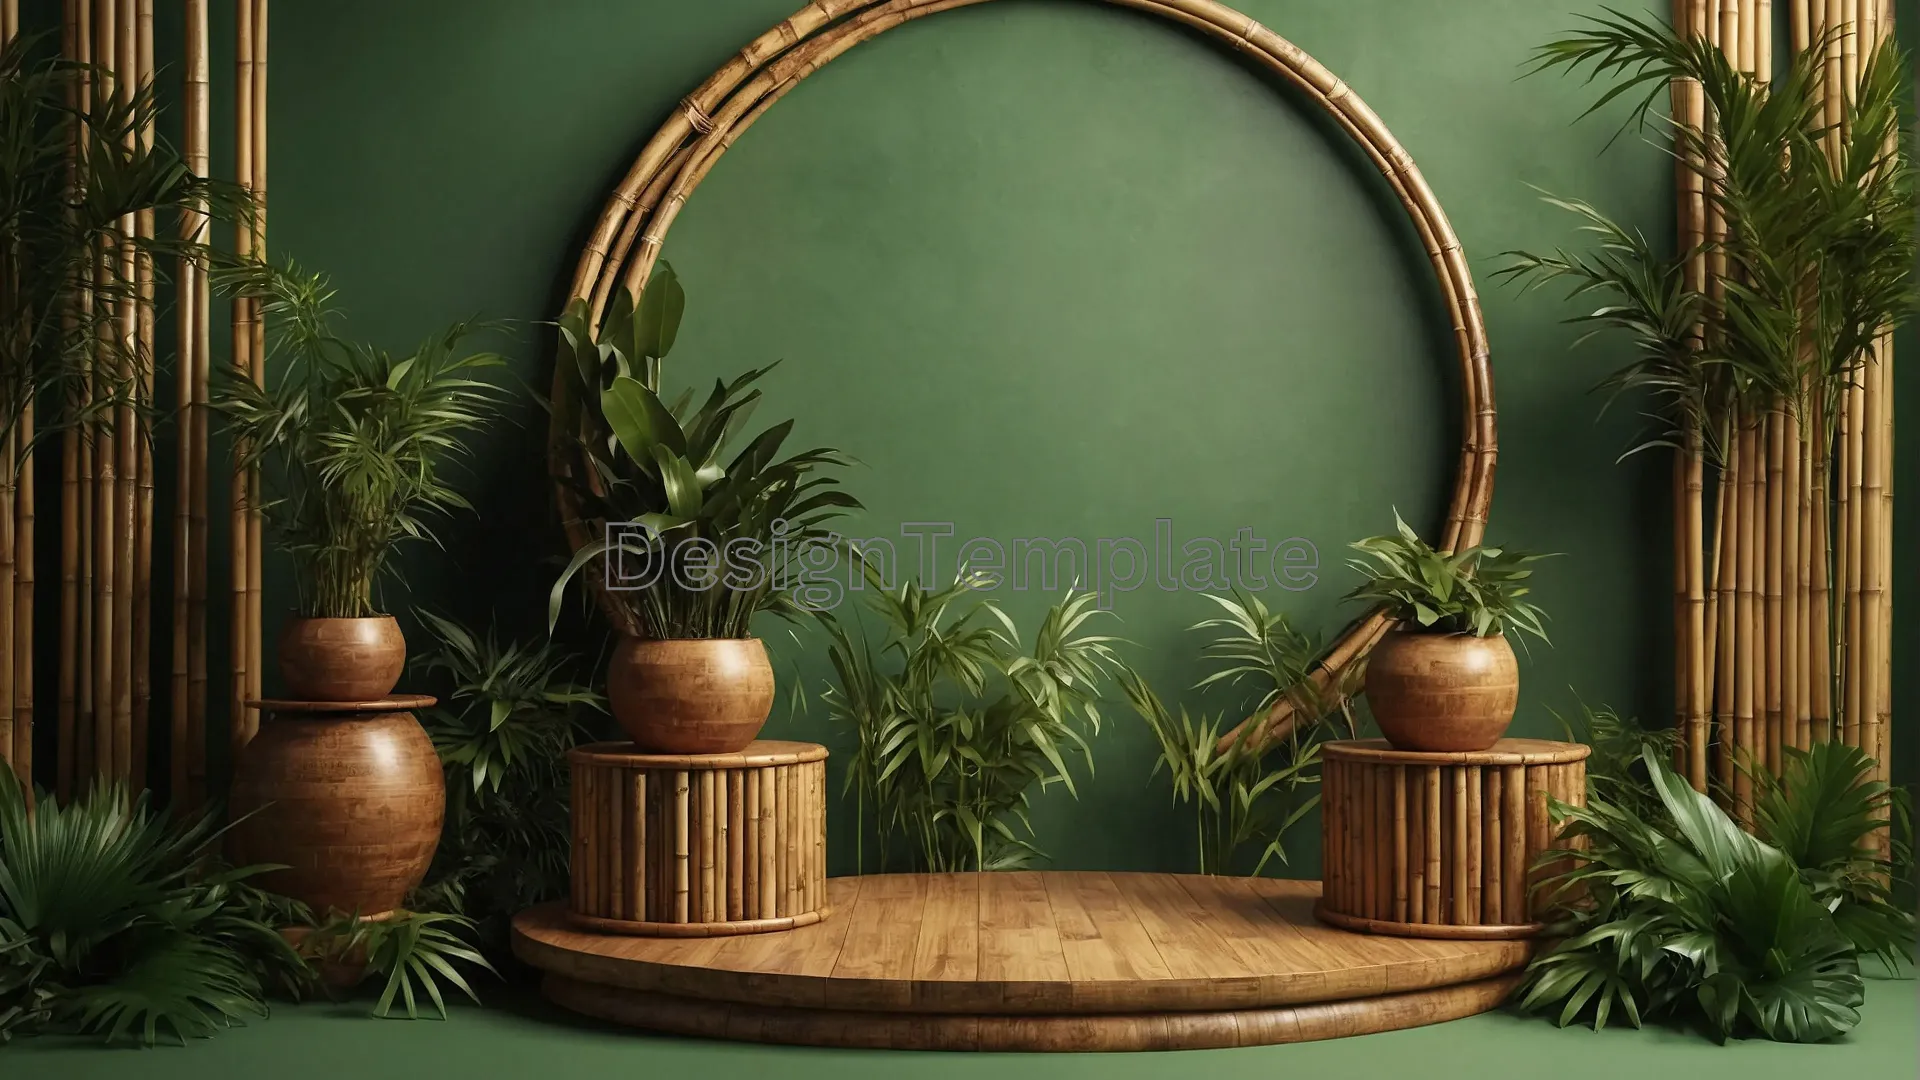 Serene Greenery Mirror View Peaceful Indoor Garden Background